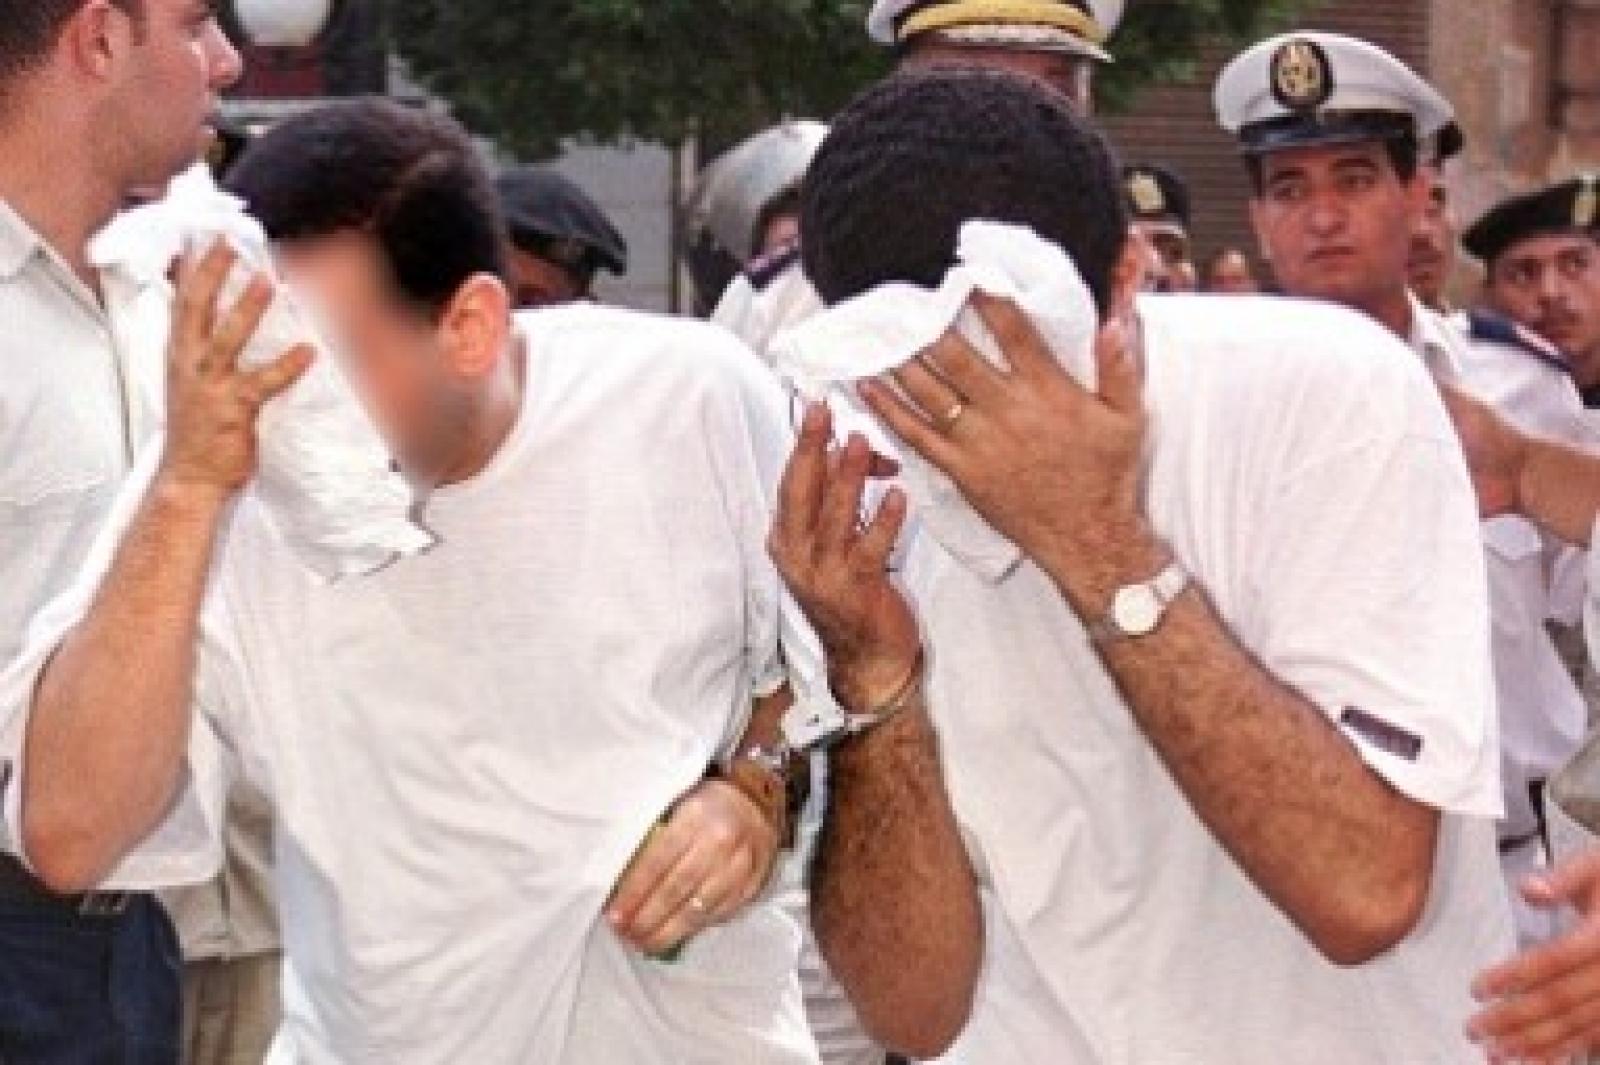 اليوم الذي تم فيه القبض علي رواد المركب   صوره نشرت عبر موقع بي بي سي نيوز عربي بتاريخ 23 ابريل 2010 توضح حالة الضحايا 